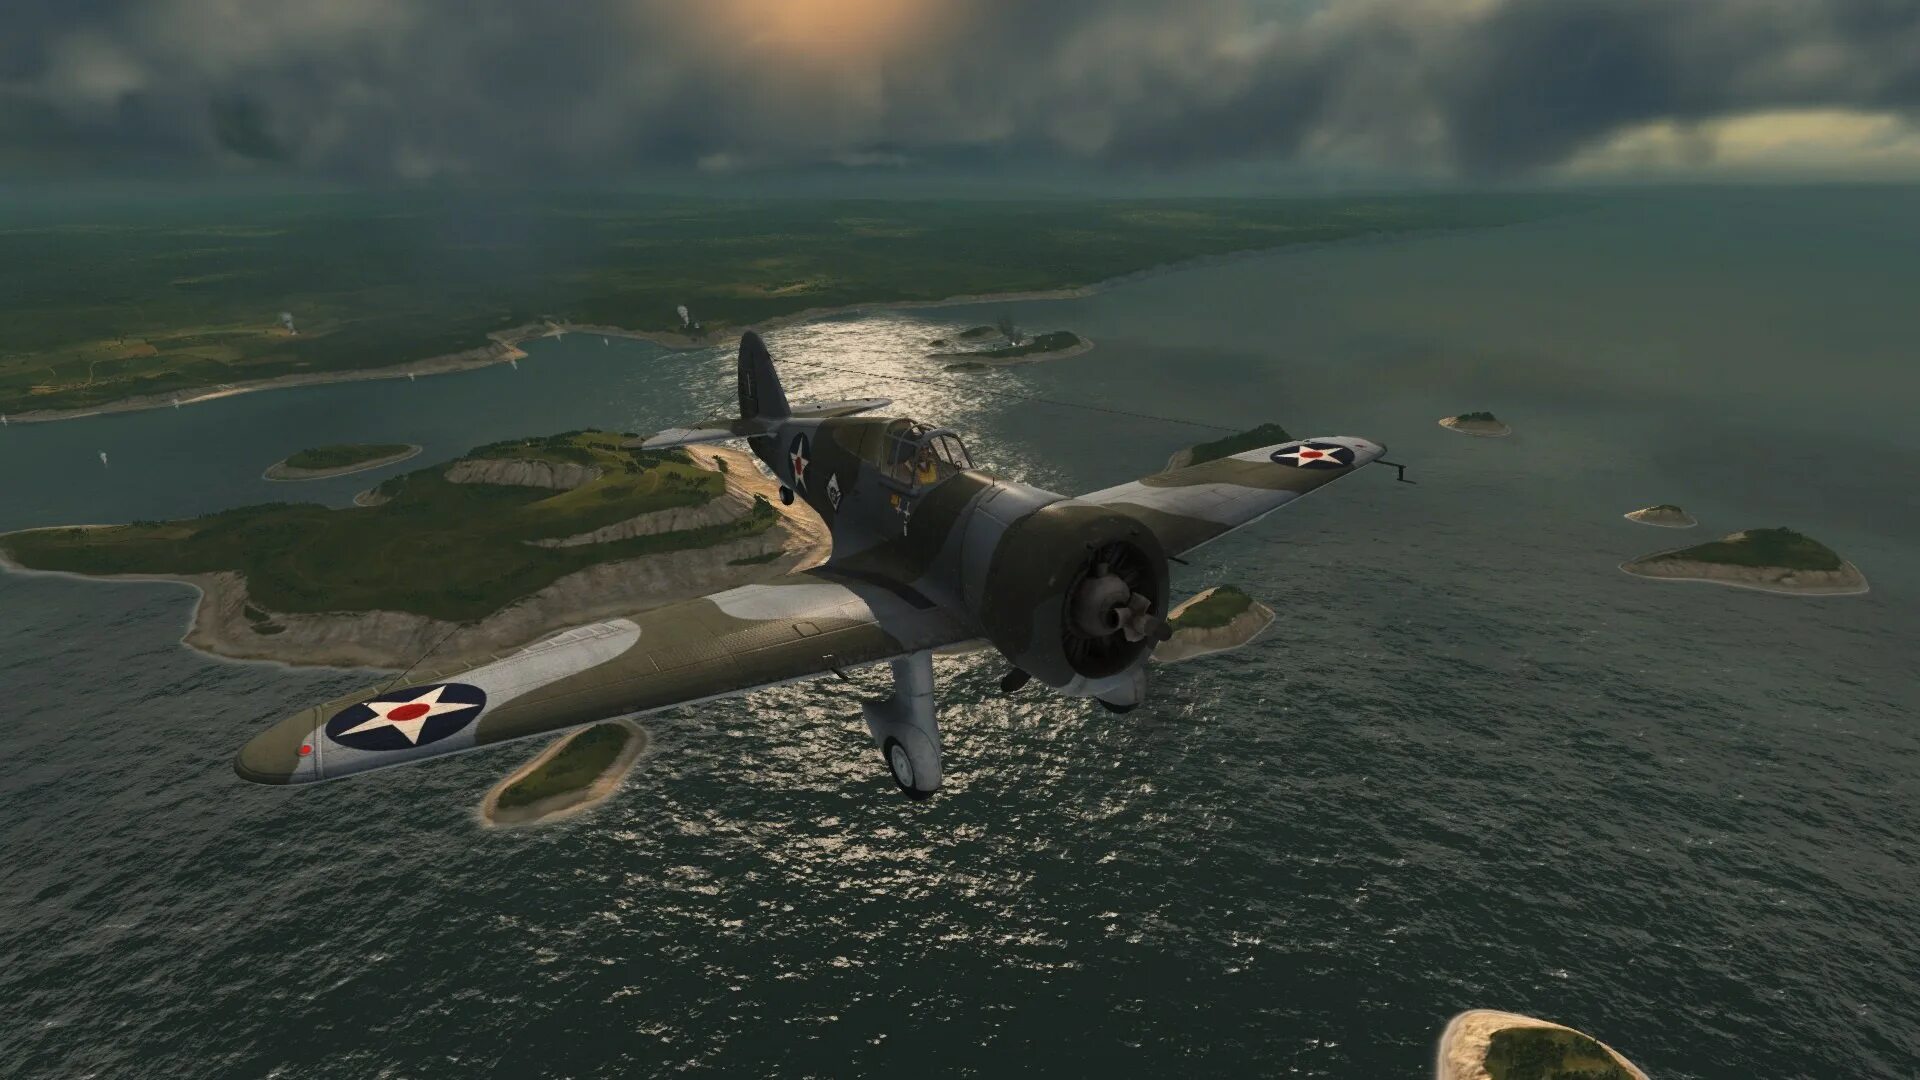 World of warplanes Скриншоты. World of warplanes 2011. World of warplanes Gameplay. World of warplanes 0.1.6.